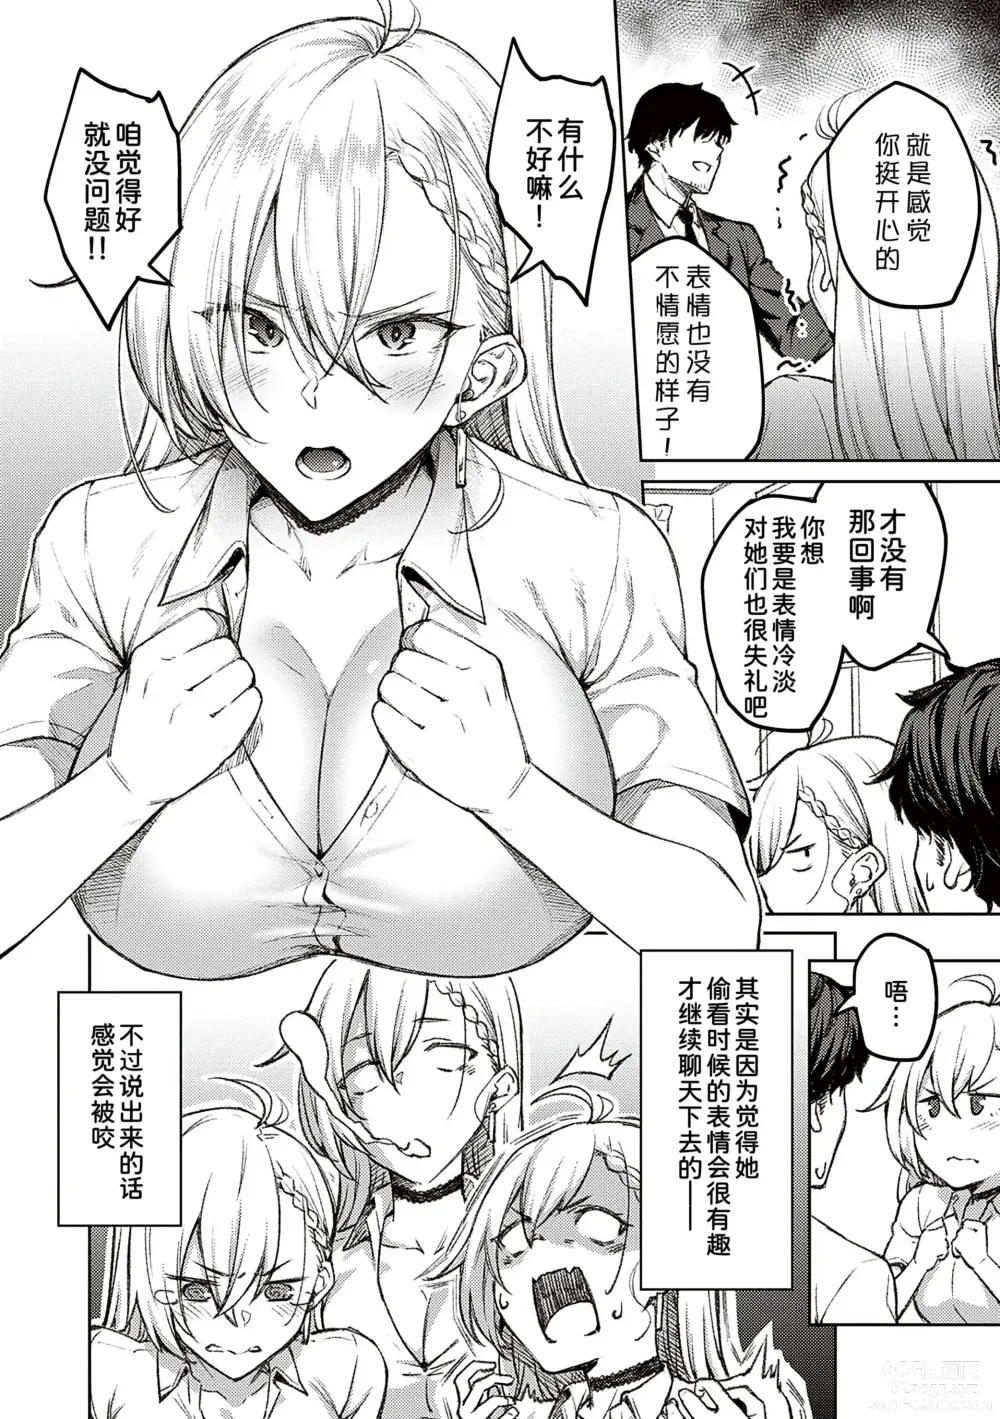 Page 8 of manga Honey Temptation